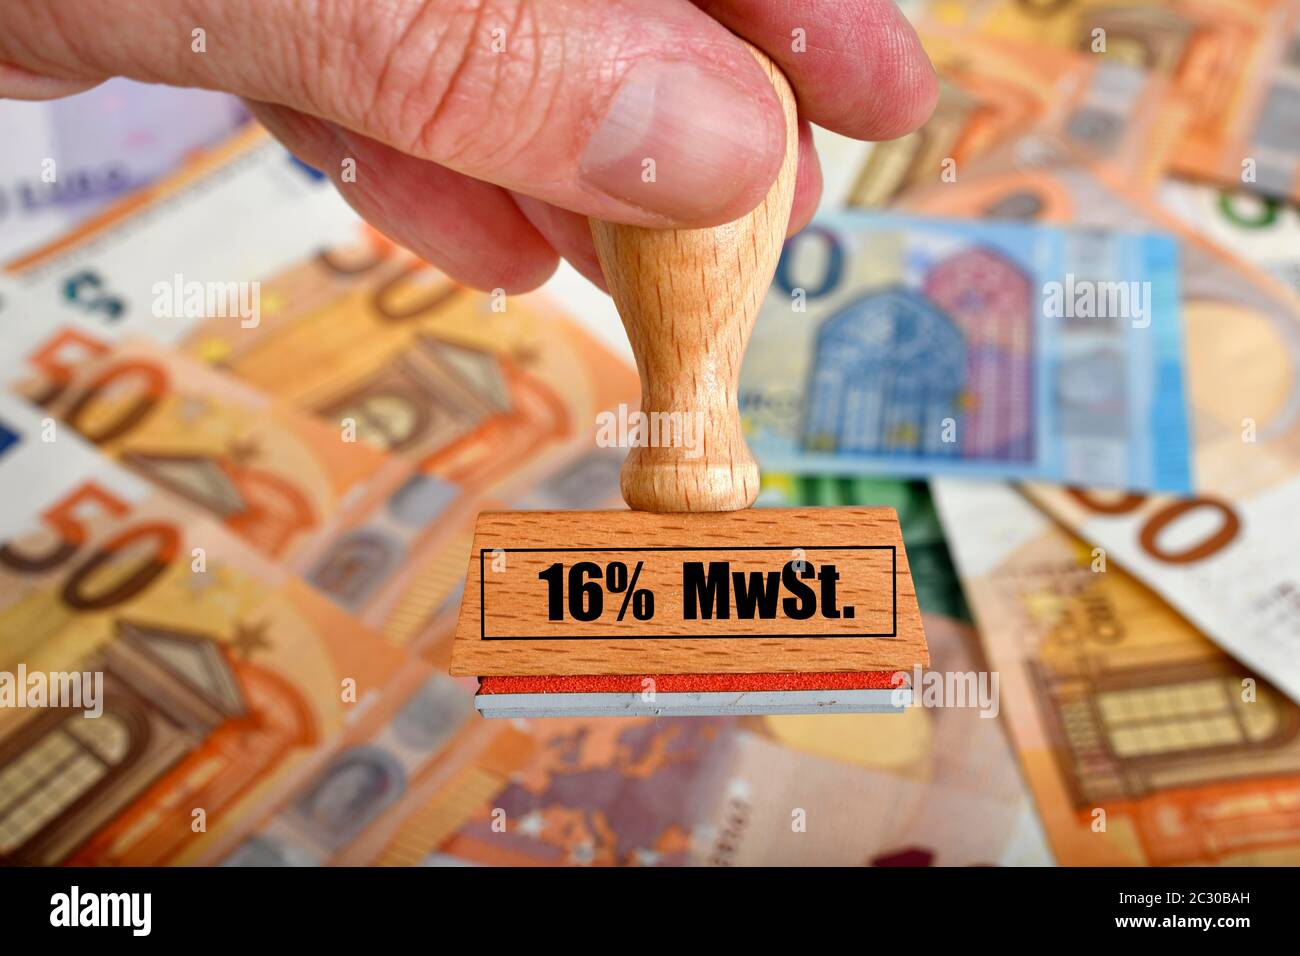 Immagine simbolica della riduzione dell'IVA mediante pacchetto di incentivi economici, timbro con iscrizione 16% IVA, Germania Foto Stock